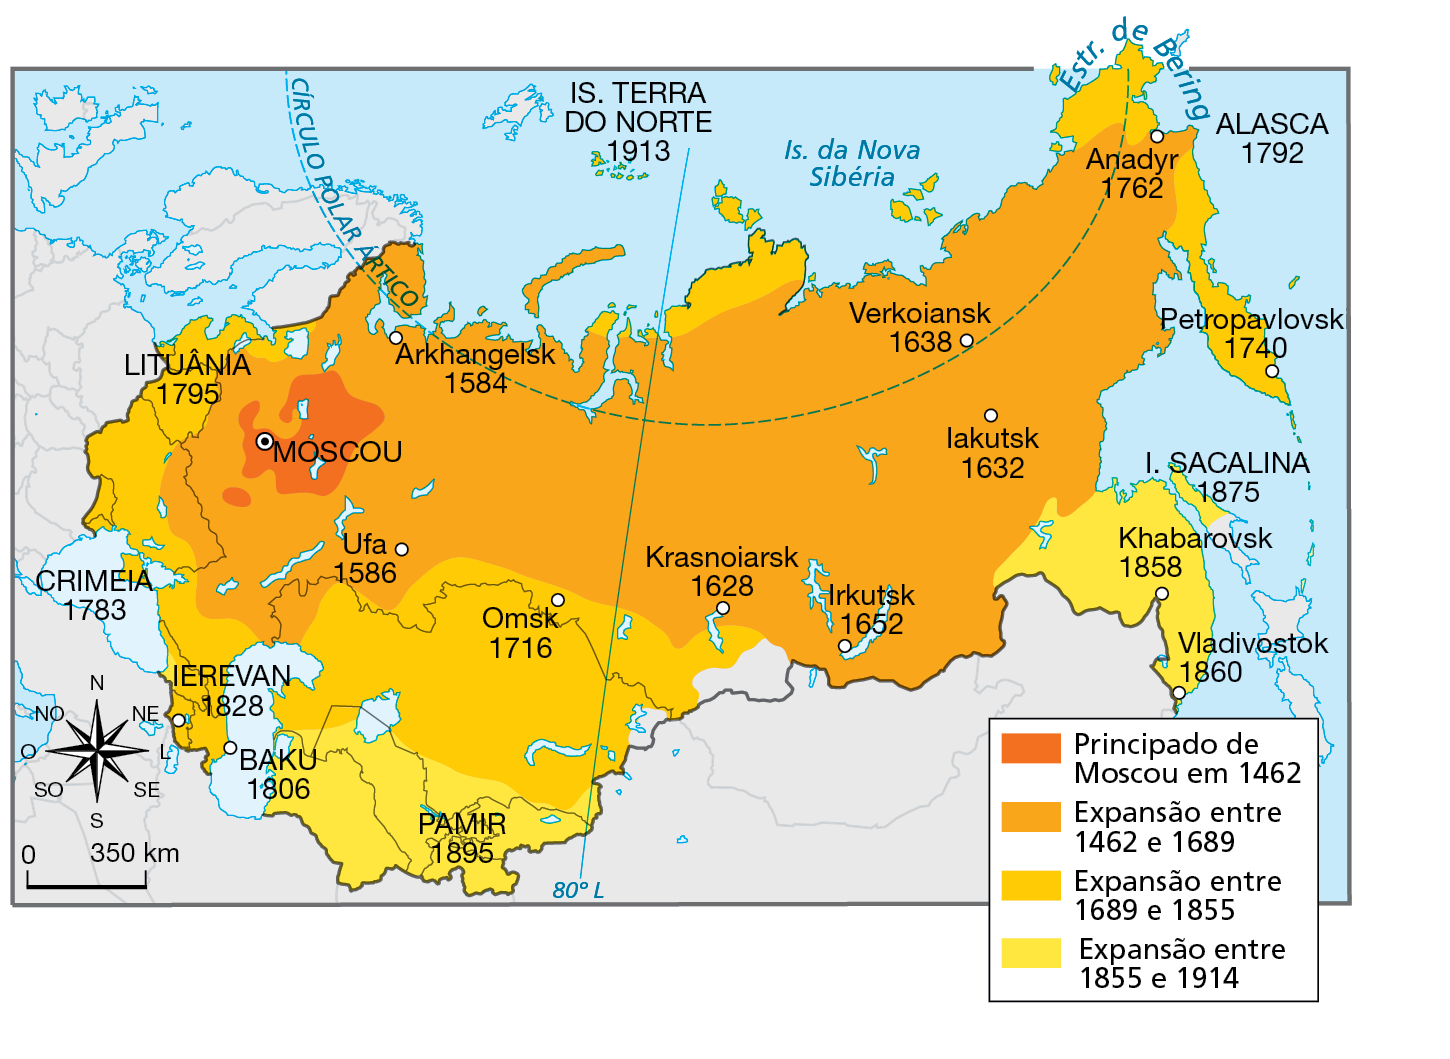 Mapa. Império Russo: expansão territorial – 1462 a 1914. Mapa representando as áreas de expansão do território russo ao longo dos séculos com as respectivas datas.
Principado de Moscou em 1462: área no entorno de Moscou, cidade no oeste do território do atual país.
Expansão entre 1462 e 1689: extensa área abrangendo a quase totalidade do território do atual país na direção leste-oeste. Cidades dessa fase: Anadyr (no extremo leste, próximo ao estreito de Bering) 1762, lakutsk (a leste) 1632, Verkoiansk (a nordeste) 1638, Krasnoiarsk  (ao sul) 1628, Irkutsk (sul) 1652, Arkhangelisk (a noroeste) 1584, Ufa (a sudoeste) 1586. 
Expansão entre 1689 e 1855: área no extremo oeste, abrangendo a Lituânia (1795), a Crimeia (1783), a porção entre o Mar Negro e o Cáspio, Onde está a cidade de Ierevan (1828) e Baku (1806) o território do atual Cazaquistão, porções no extremo norte e península situada no extremo leste do país, onde está a cidade de Petropavlovsk (1740).
Expansão entre 1855 e 1914: área do Império Russo passa a abranger maior porção no sudoeste (território dos atuais Uzbequistão, Quirguistão, Tadjiquistão e Turcomenistão), englobando a cidade de Pamir (1895), e maior porção no sudeste, englobando a ilha Sacalina (1875) e as cidades de Khabarovsk (1858) e Vladivostok 1860. 
Na parte inferior, rosa dos ventos e escala de 0 a 350 quilômetros.